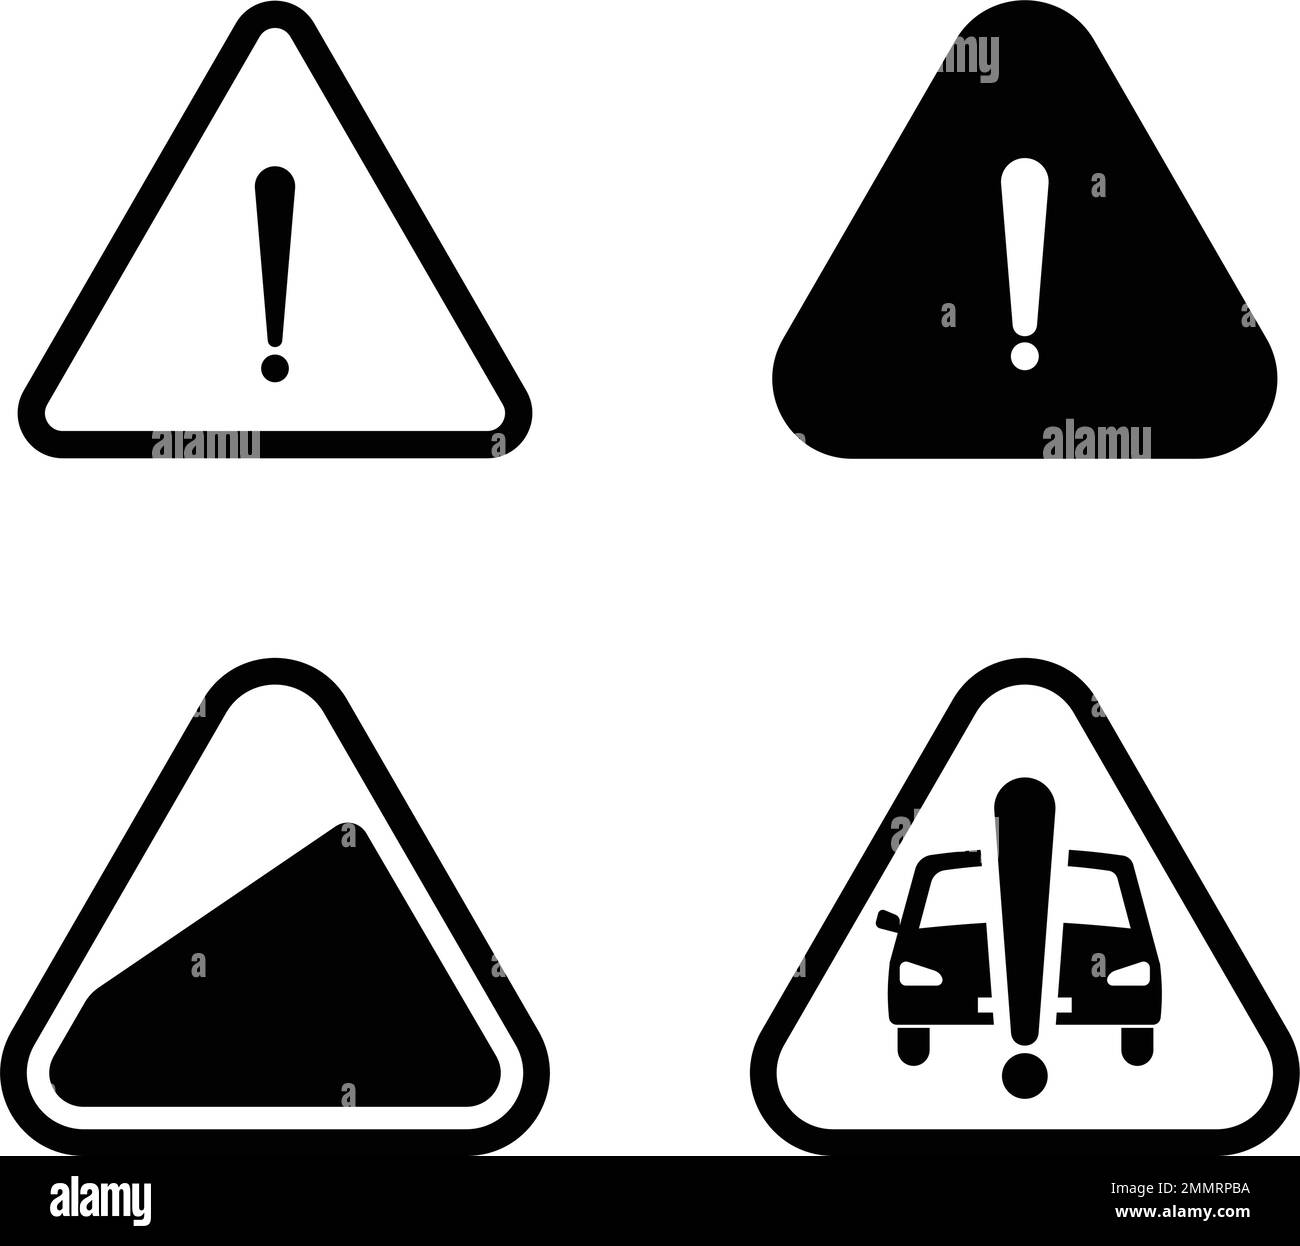 vektor car warning logo illustration design Stock Vector